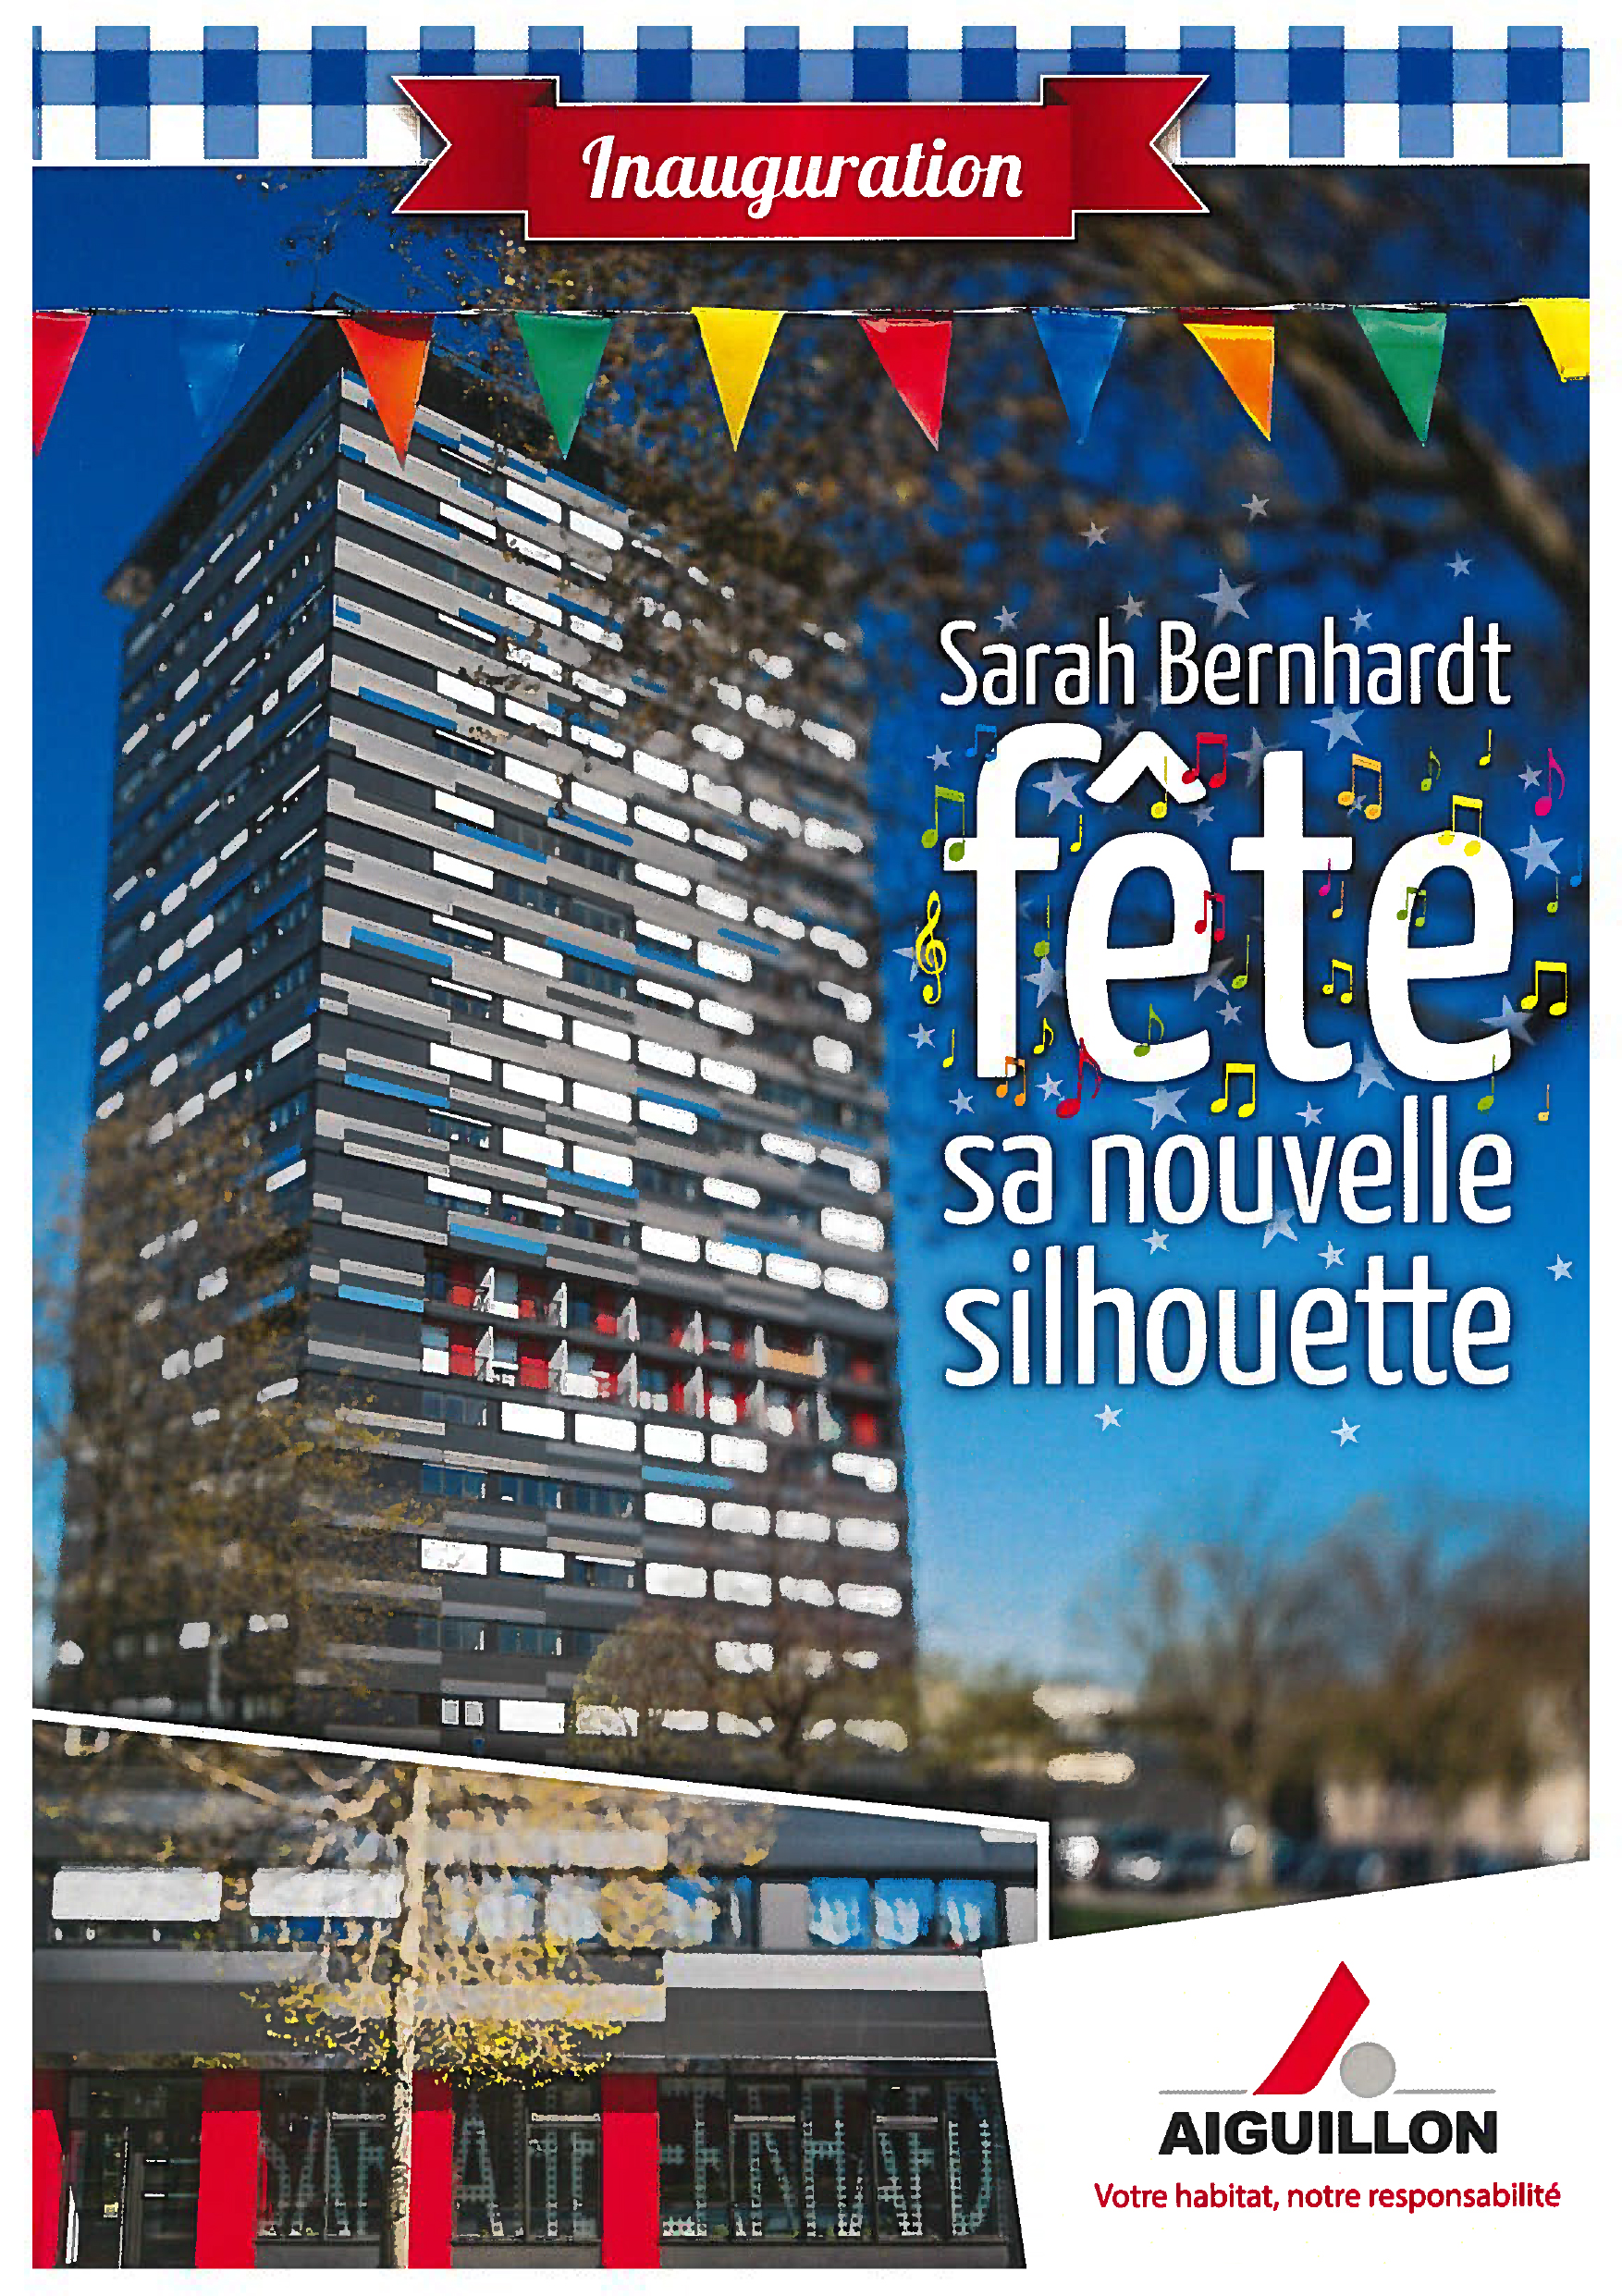 Inauguration de la tour Sarah Bernhardt